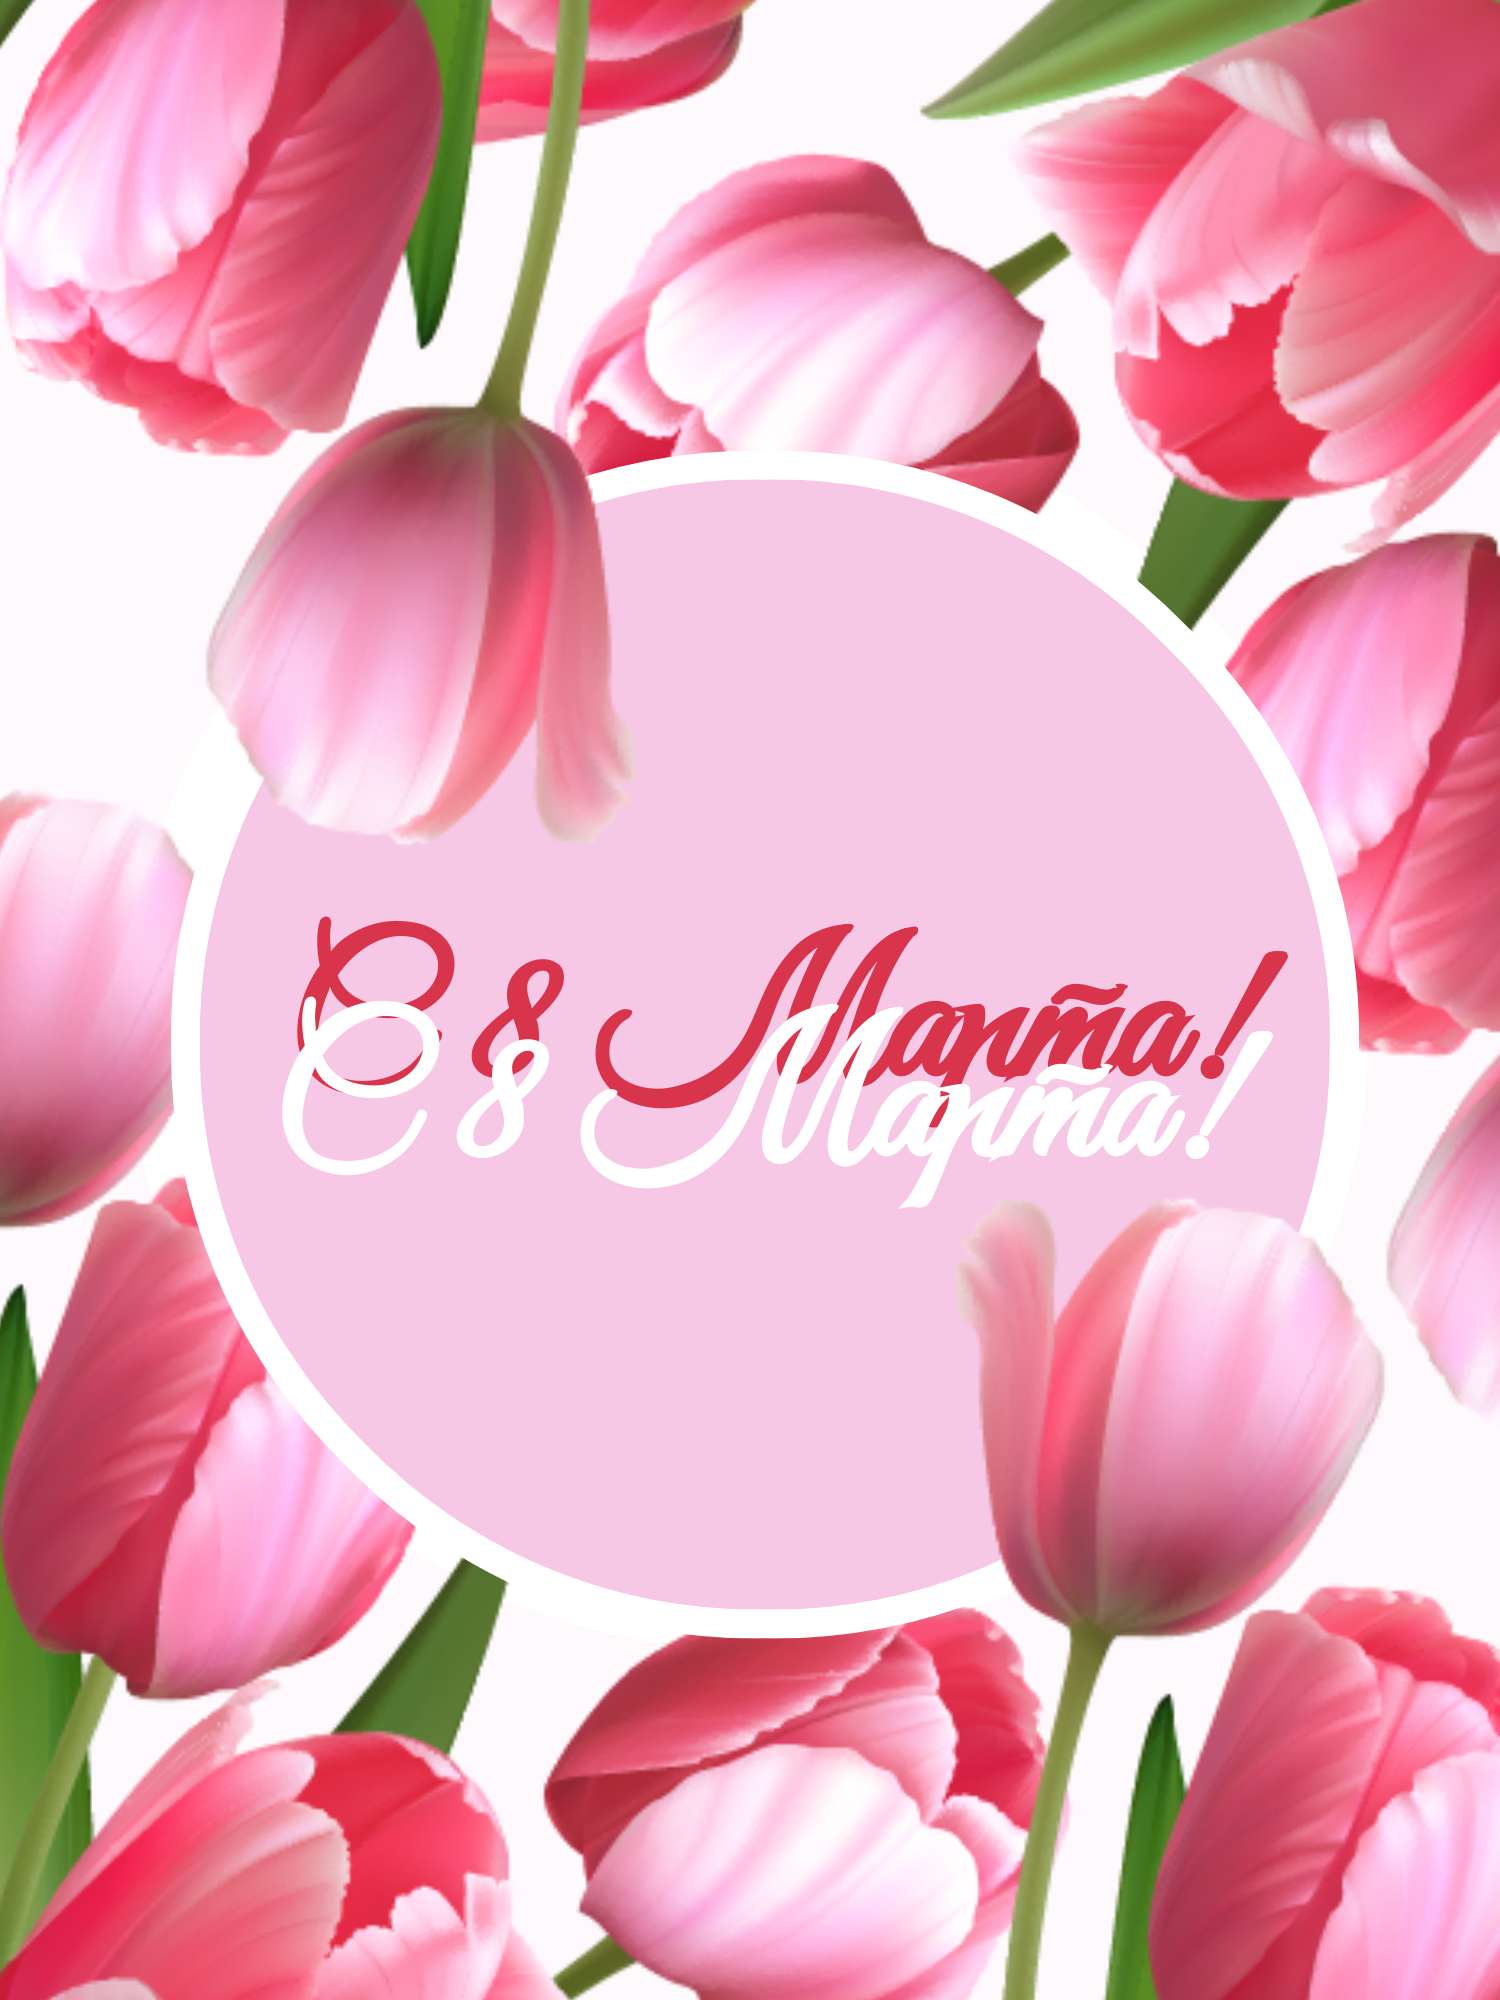 Цветочная открытка в день 8 марта с розовыми тюльпанами на фоне